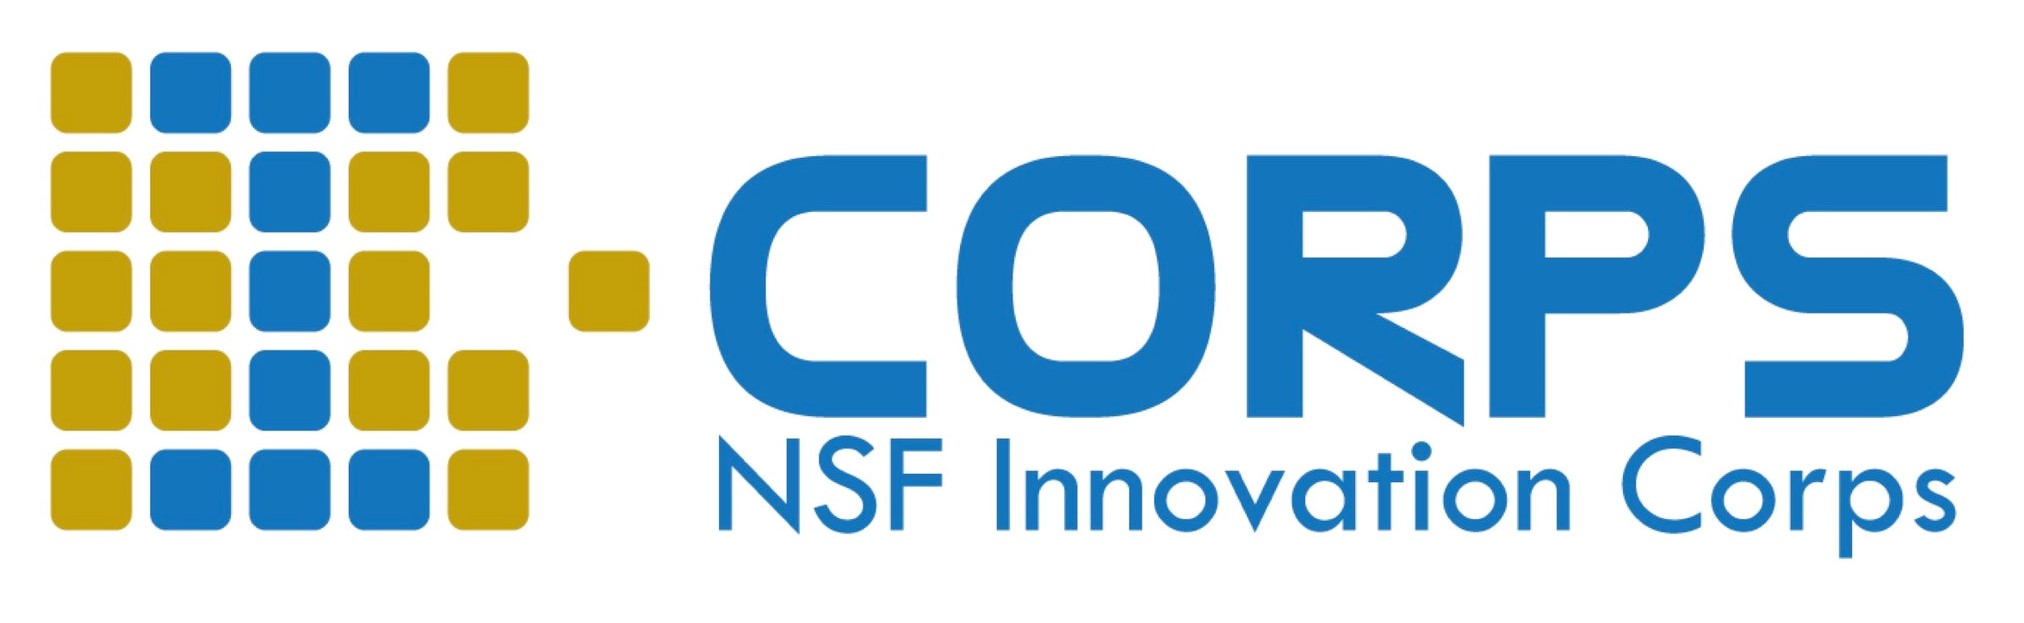 ICorps logo